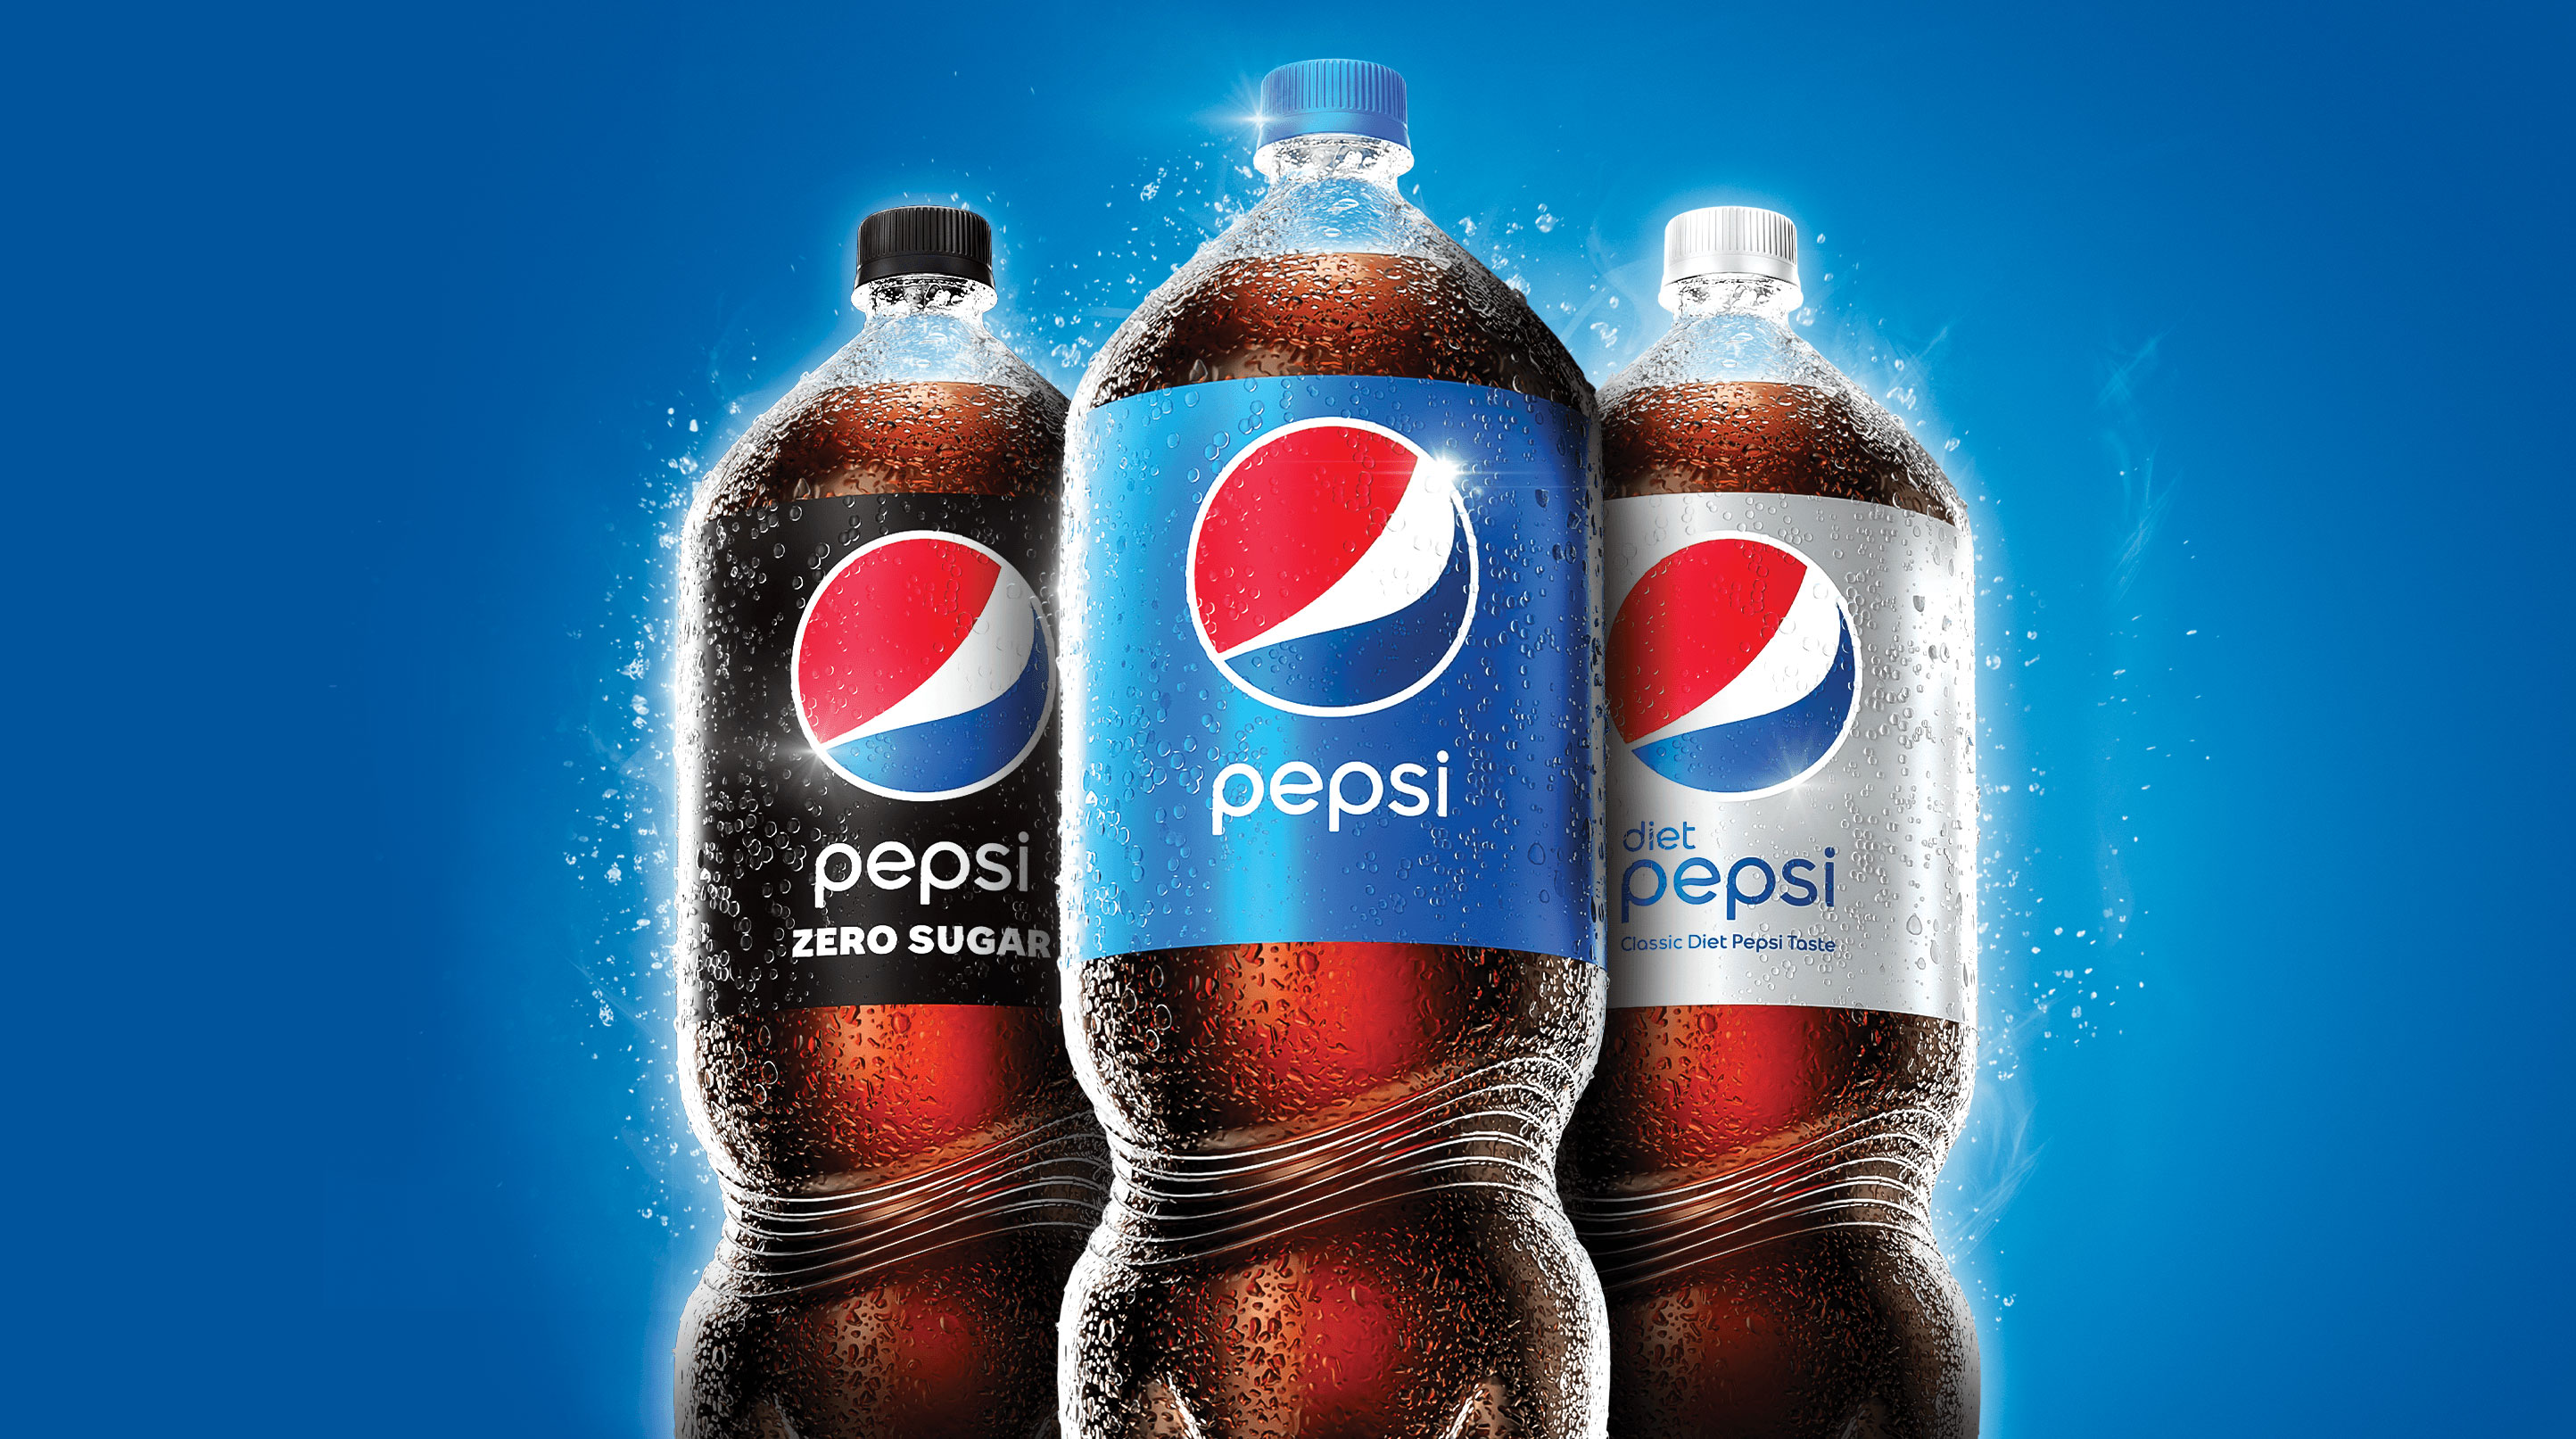 Pepsi bottles dating Chosi's Pepsi